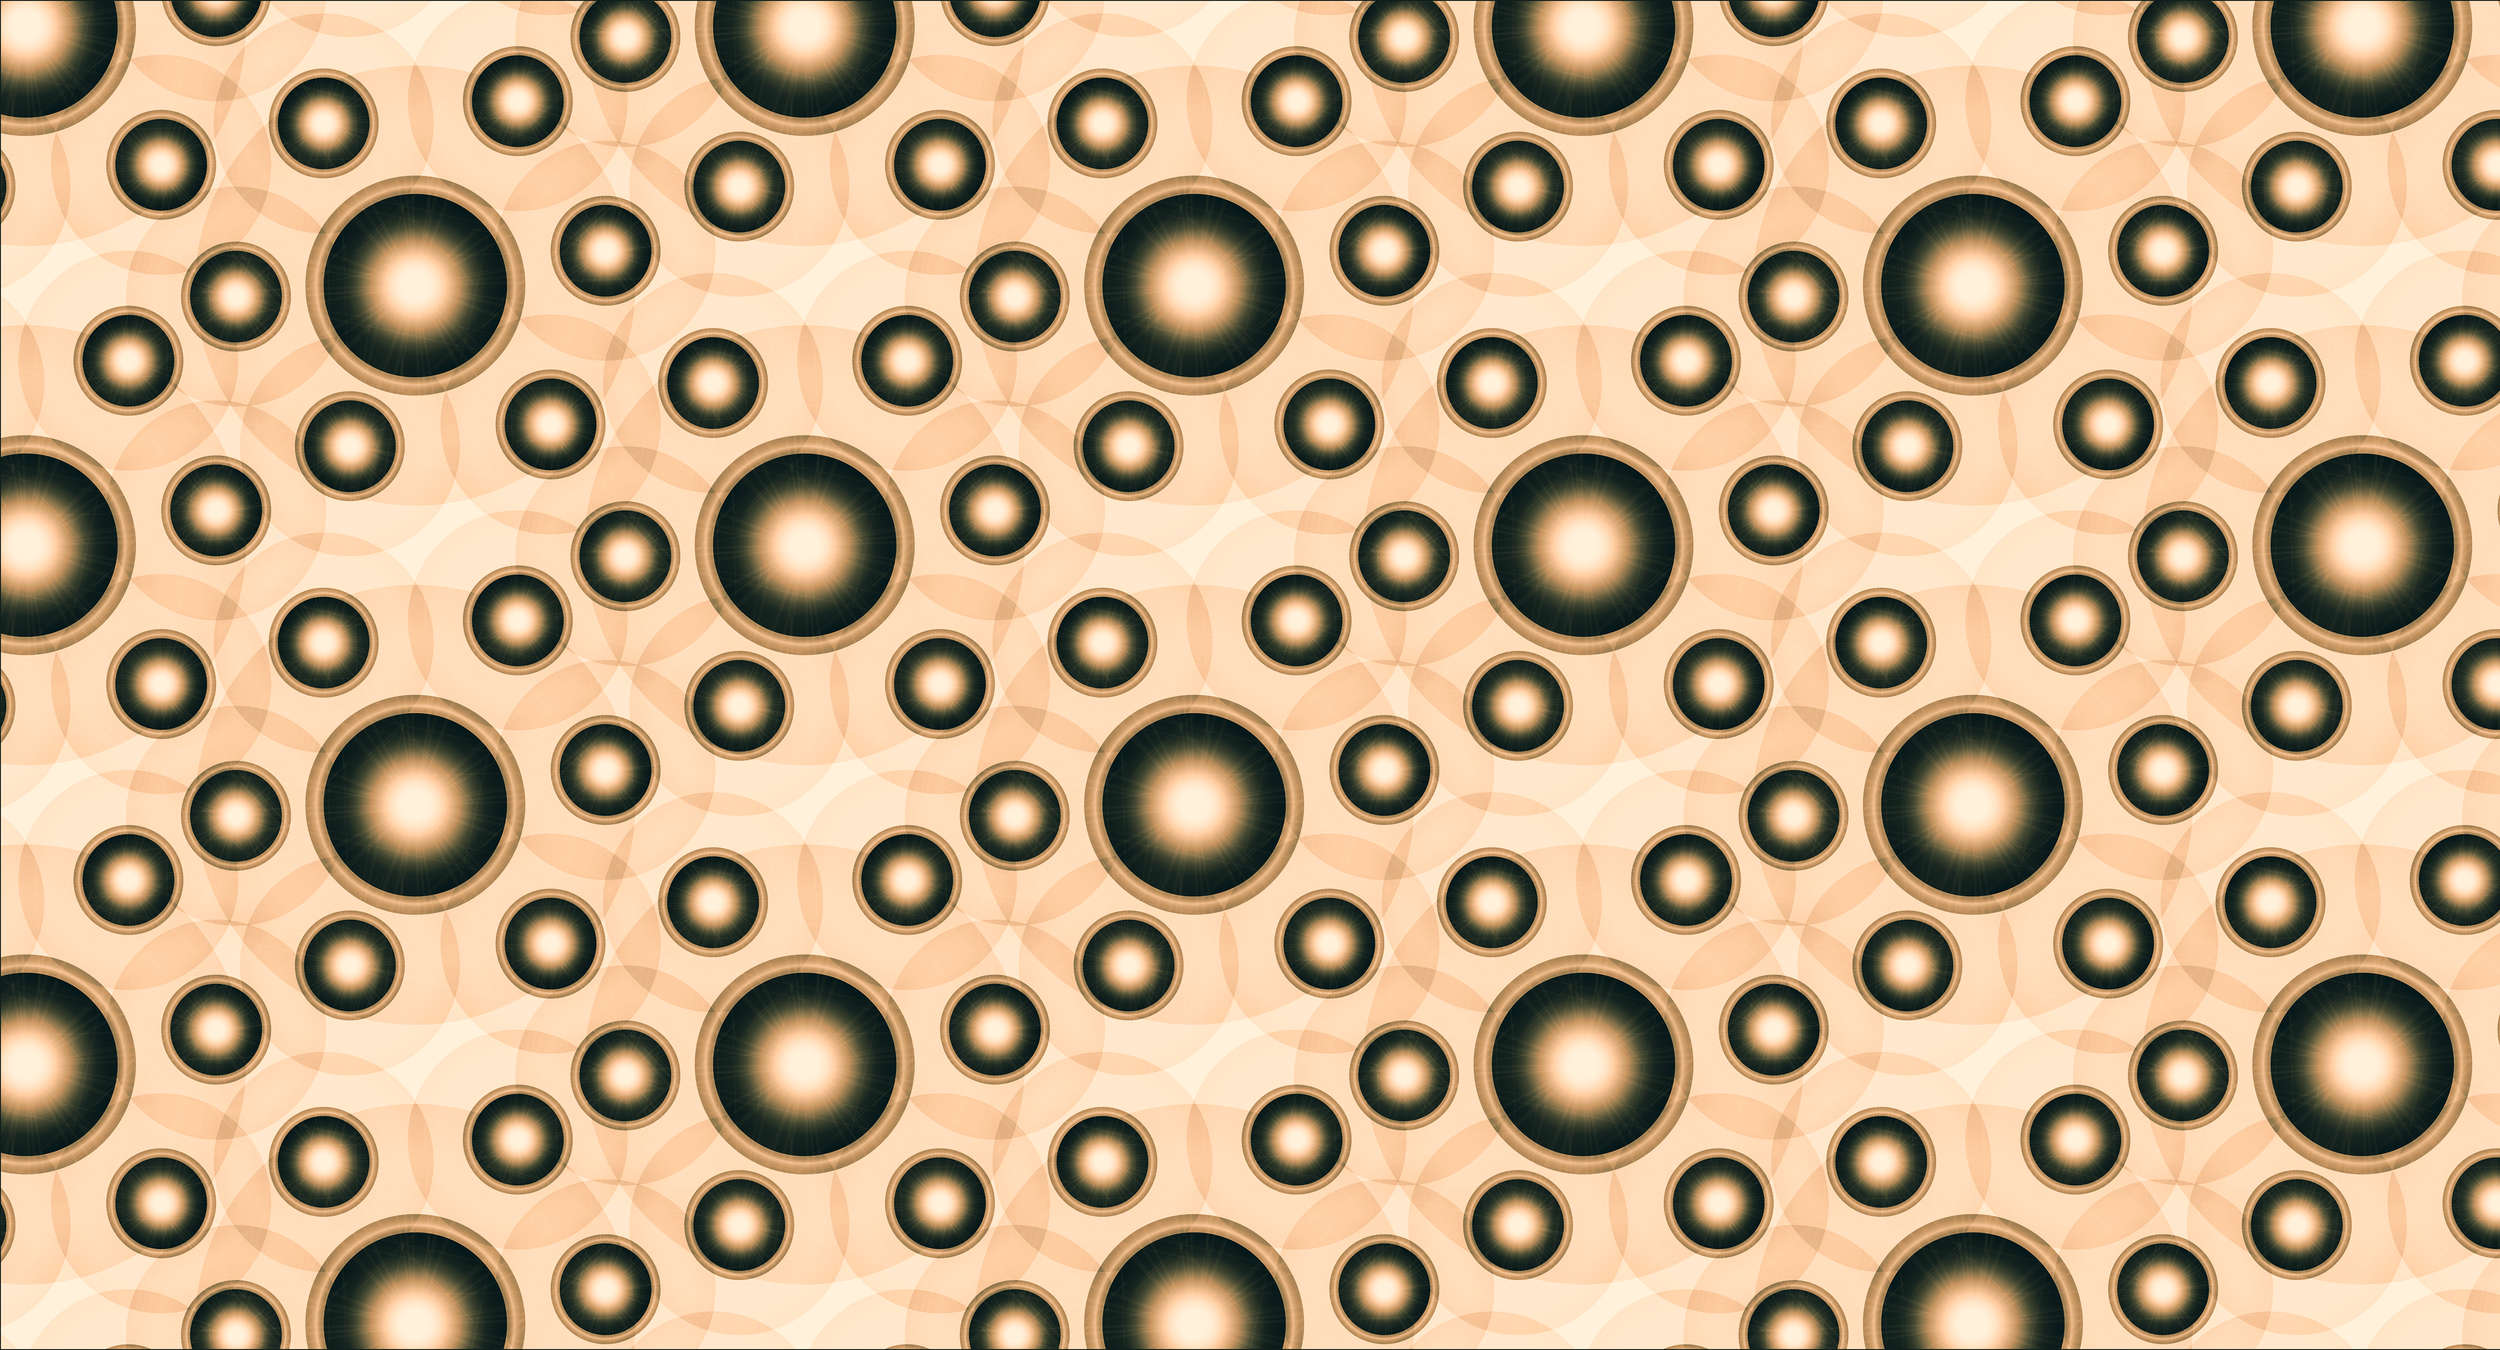             Fototapete Kreisen & Punkten im 3D-Design – Orange, Weiß, Schwarz
        